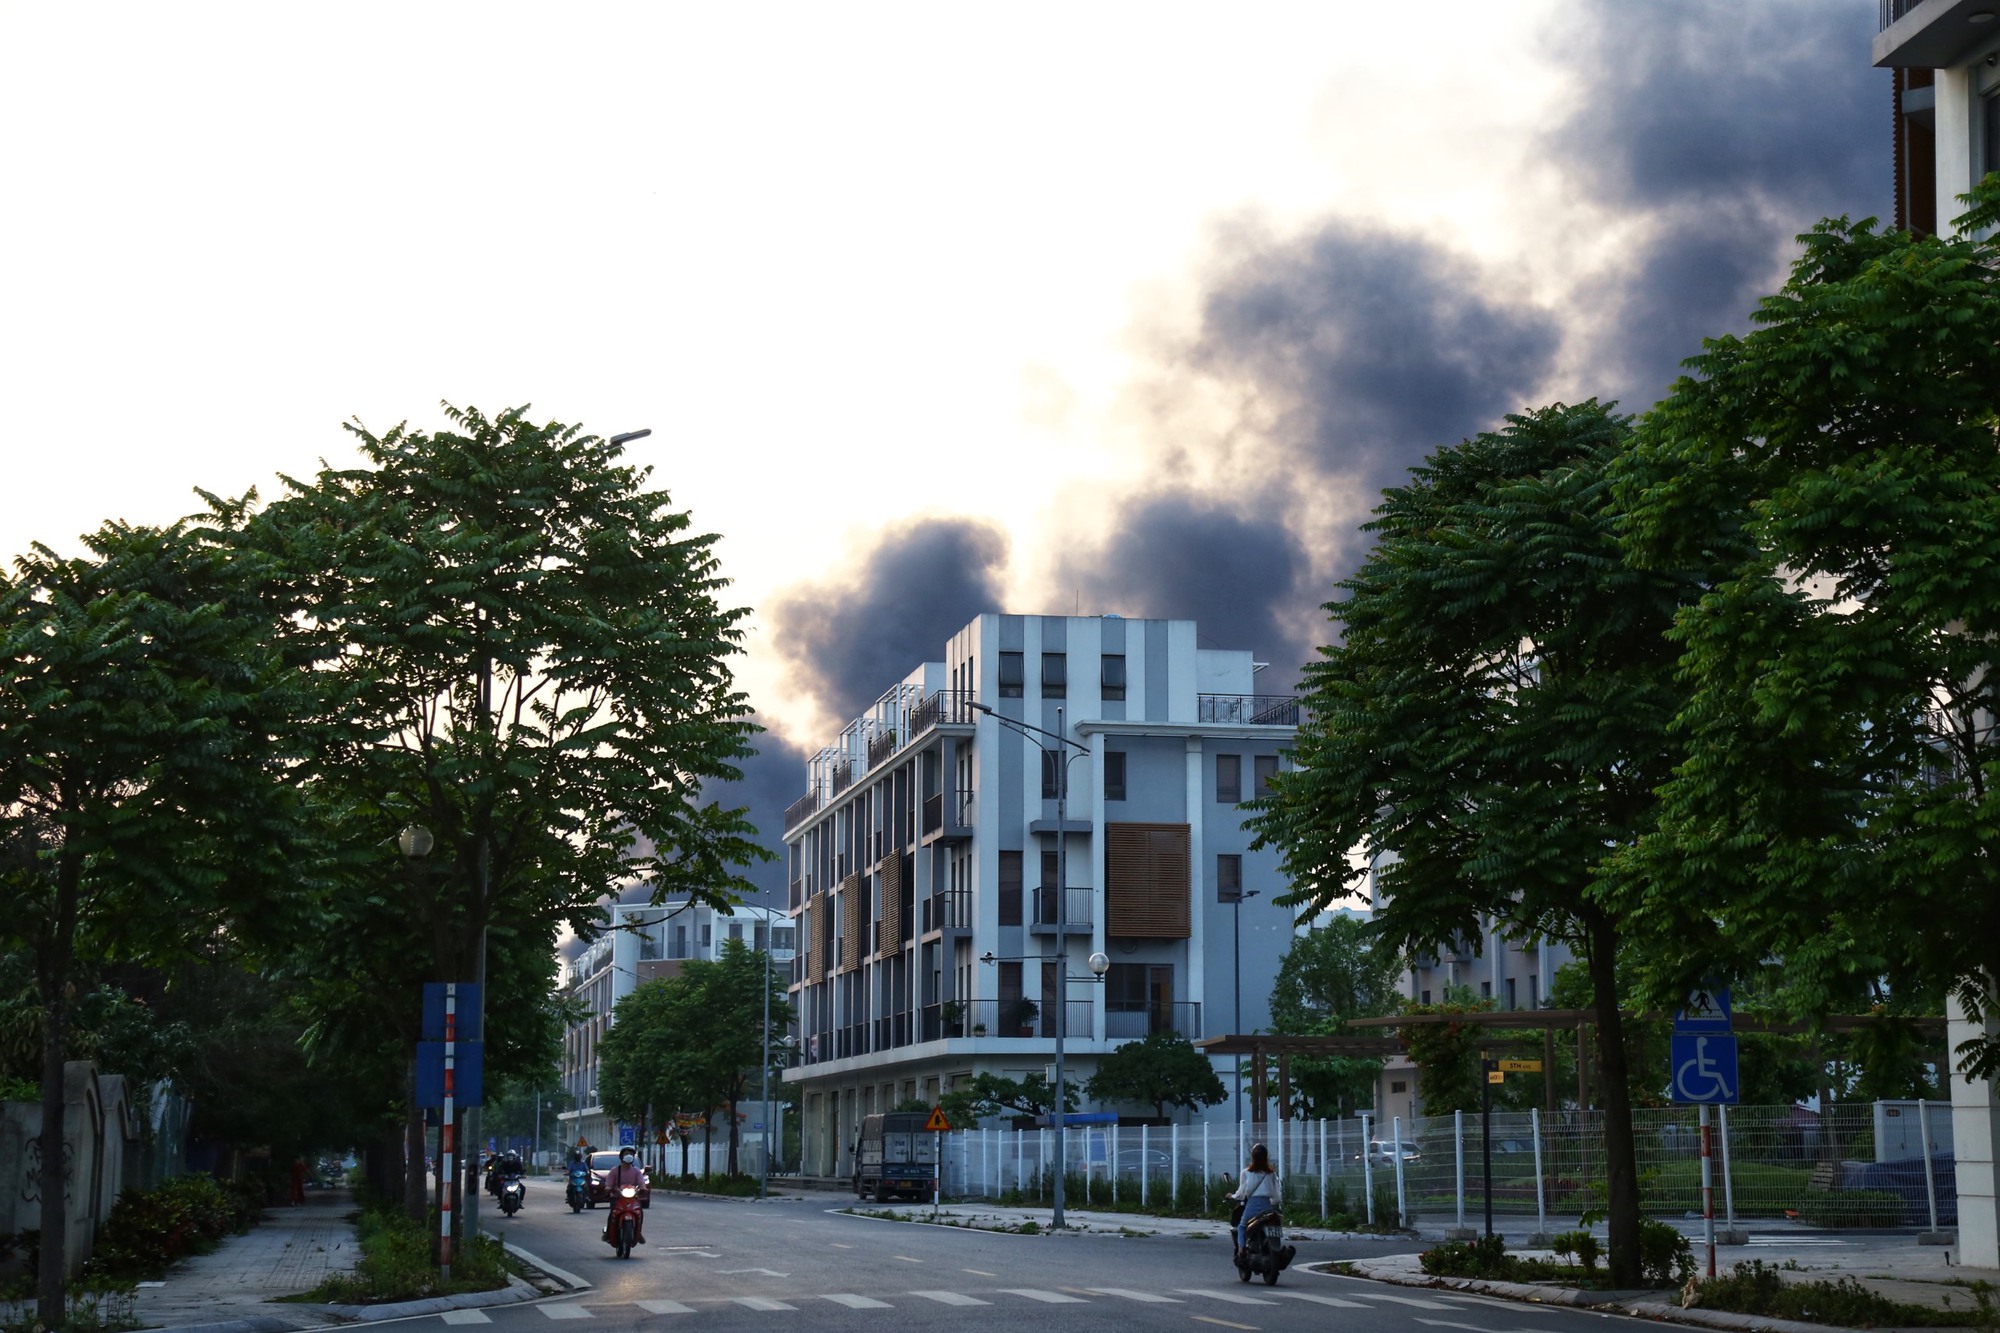 Hà Nội: Cháy lớn bãi nhựa cạnh nghĩa địa ở xã Tân Triều, cột khói bốc cao hàng trăm mét - Ảnh 2.